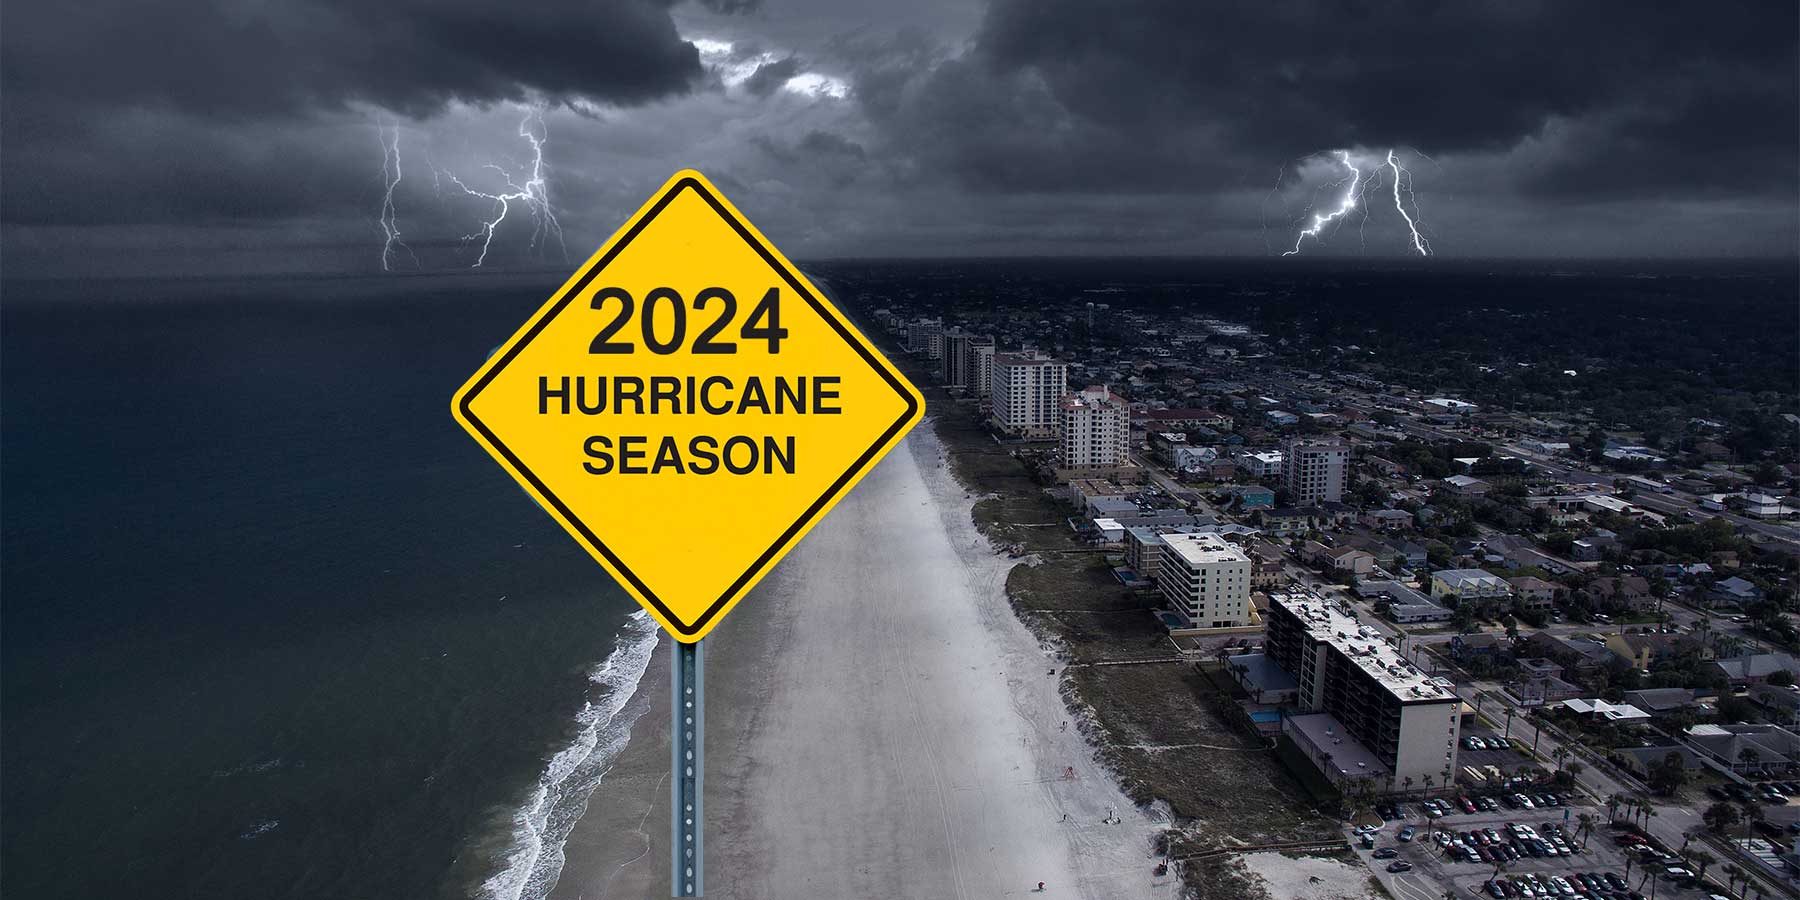 hurricane-preparedness